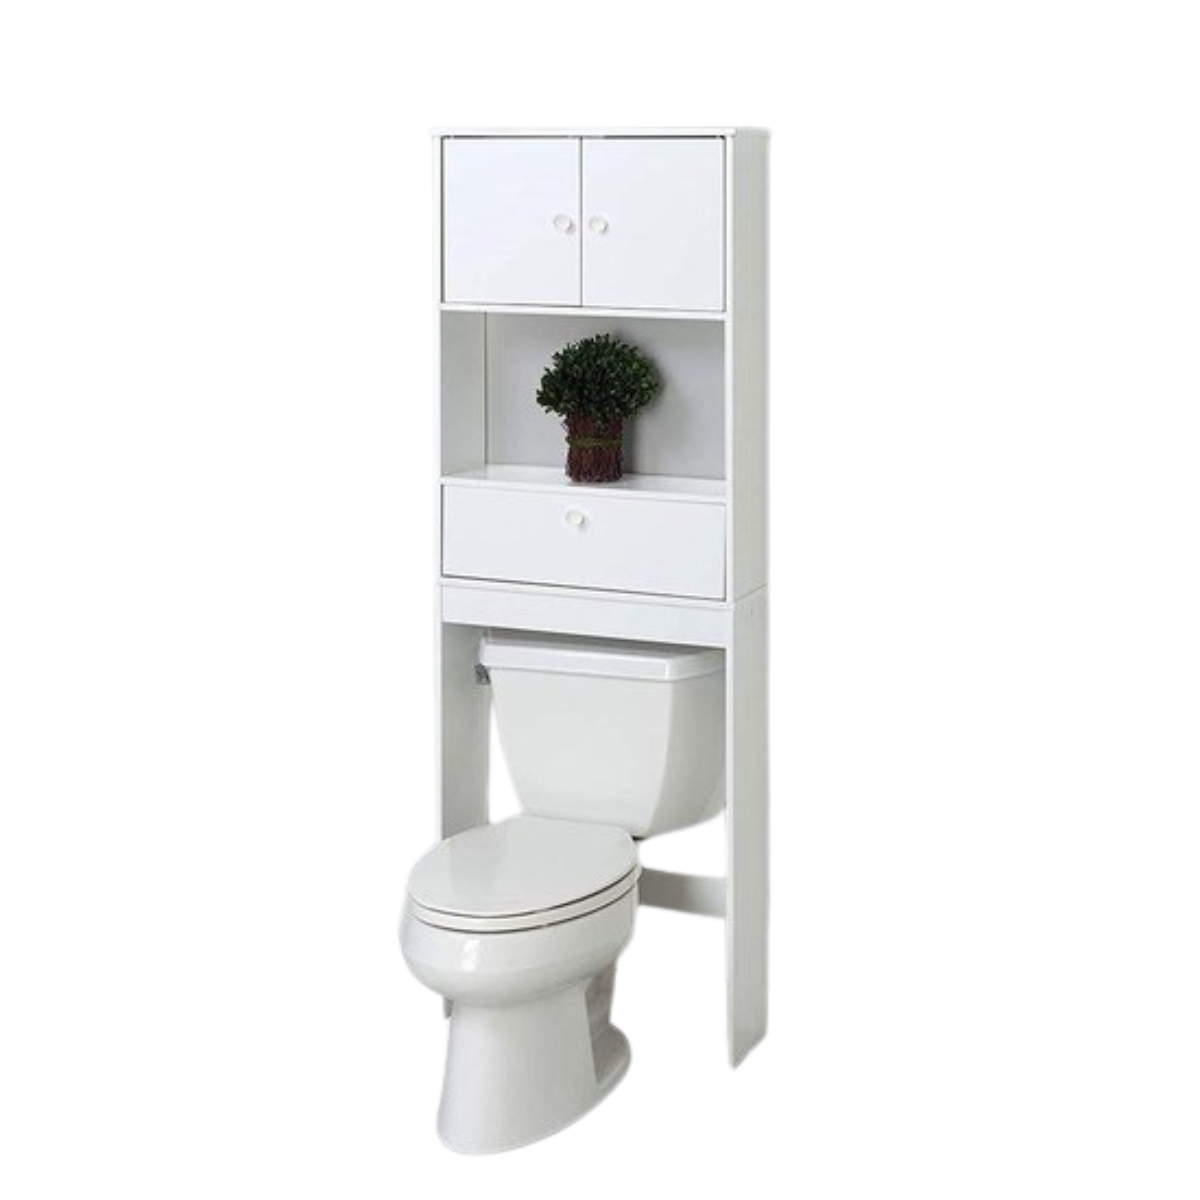 Eleganca Toiletkast - Badkamer meubel - 3 planken - Wit - 162,5cm x 58,5cm x 19cm